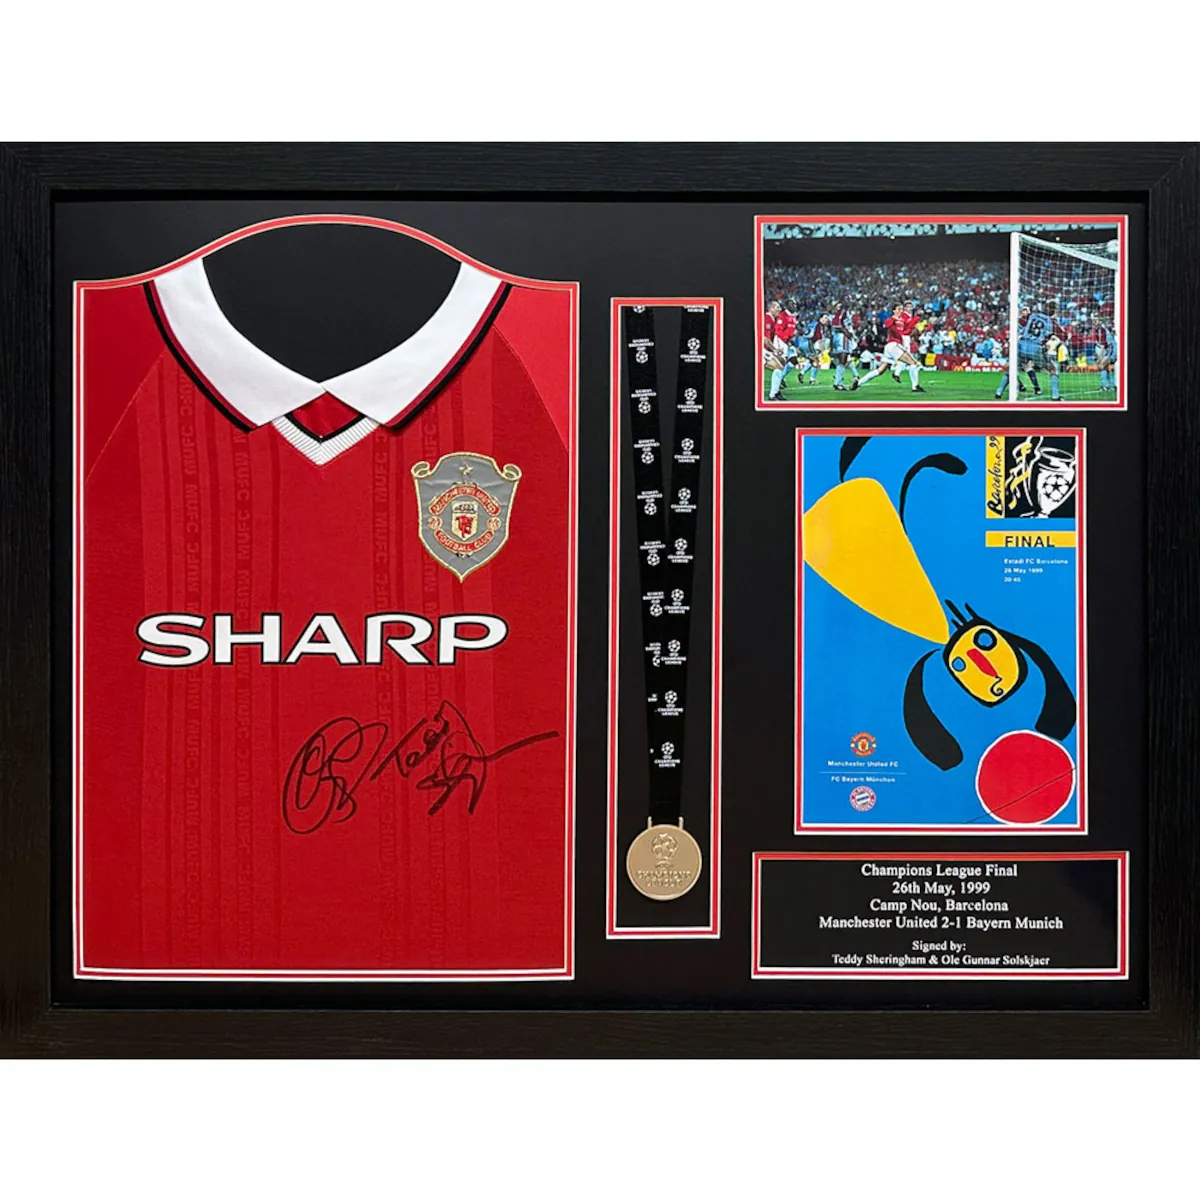 TM-03202 Manchester United F.C. Solskjaer & Sheringham Framed Signed 1999 Replica Football Shirt & Medal